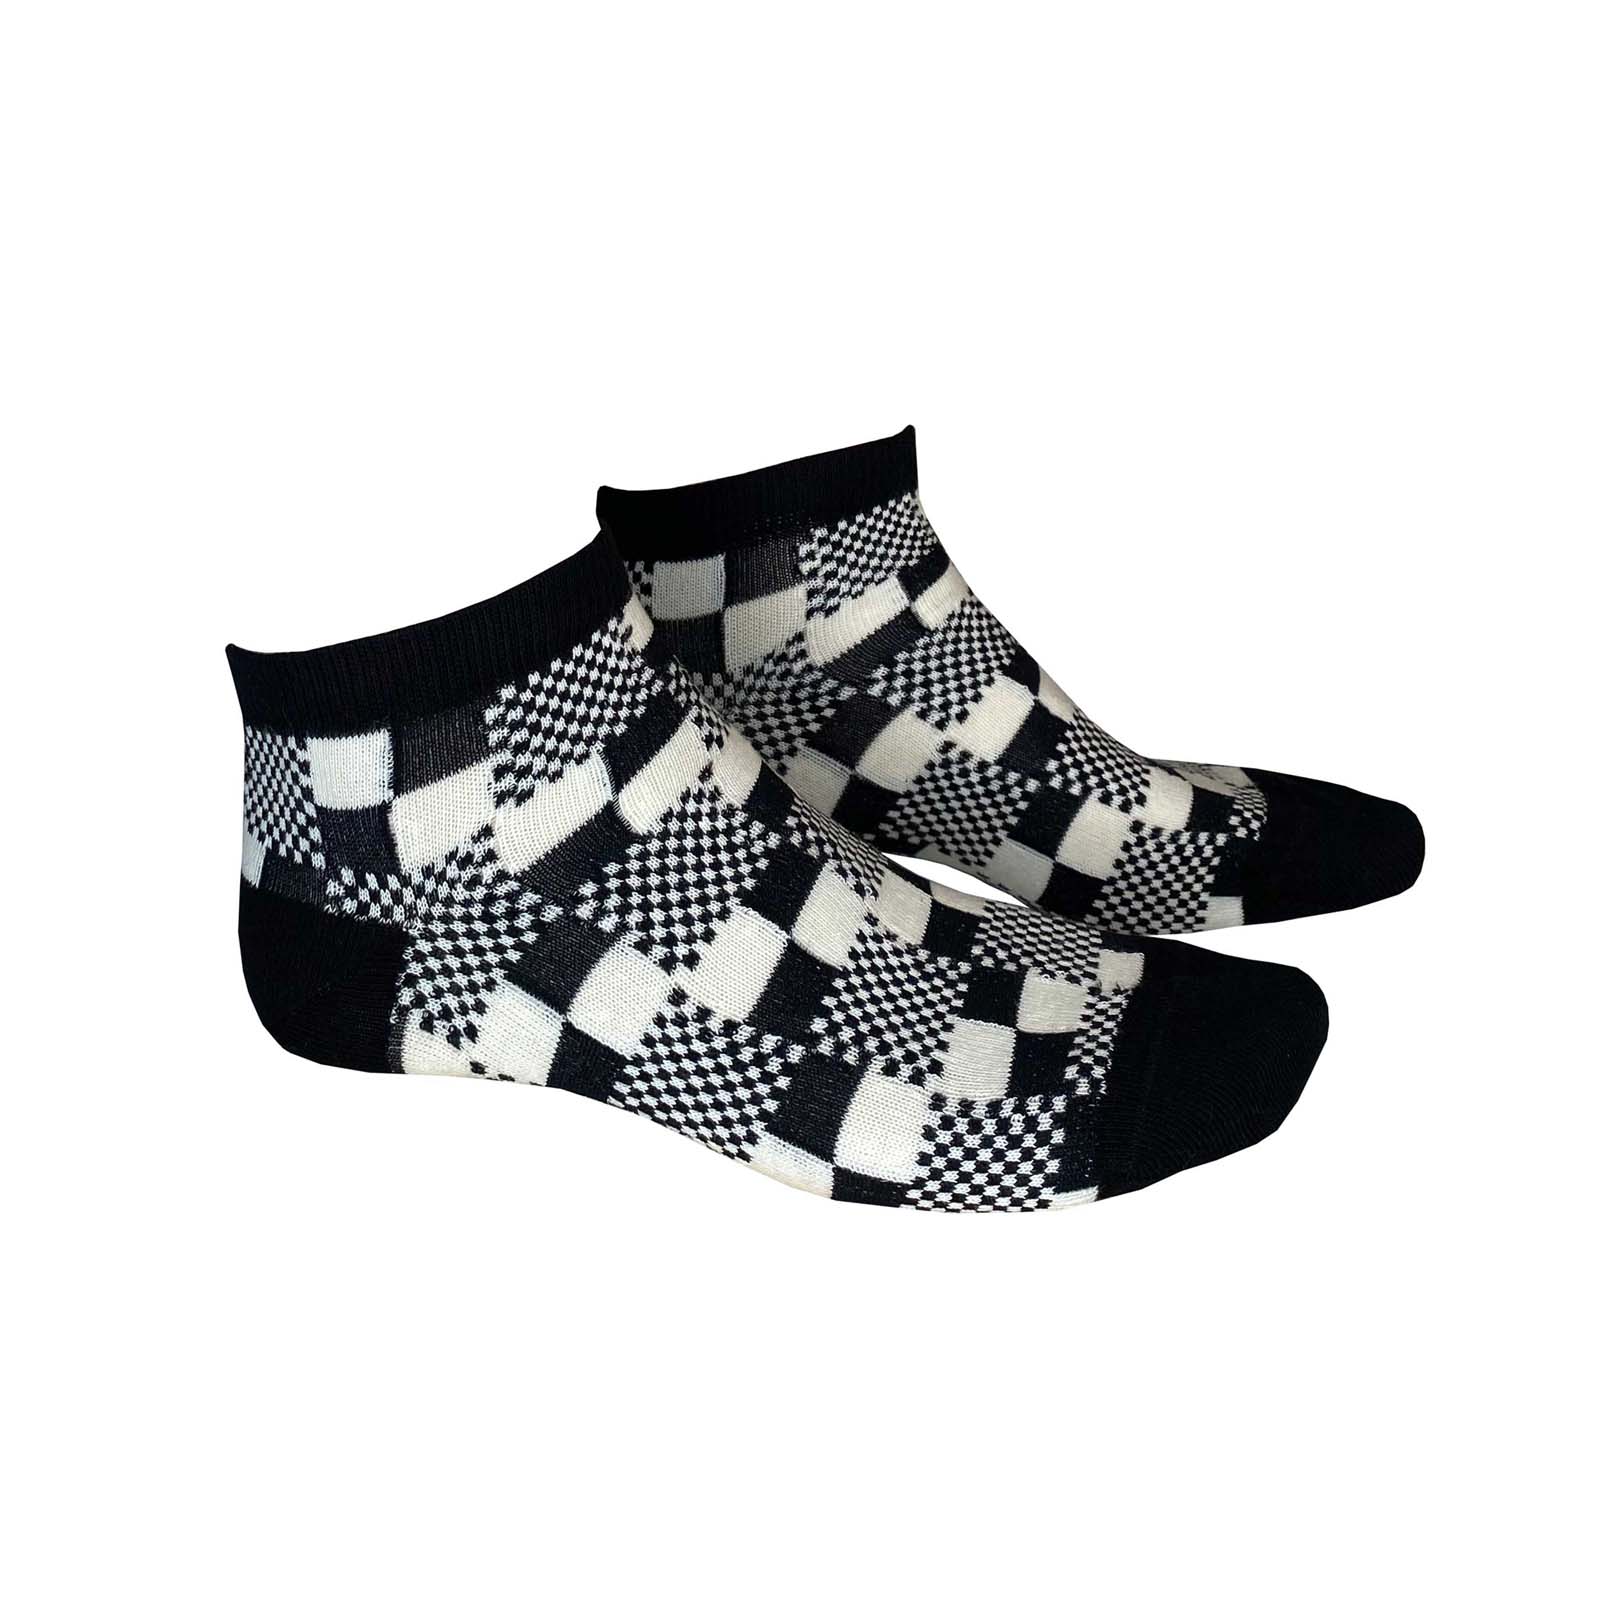 HUDSON Herren TRICKY -  39/42 - Herren Sneaker Socken mit auffälligem Schachbrett-Muster - Black (Schwarz)